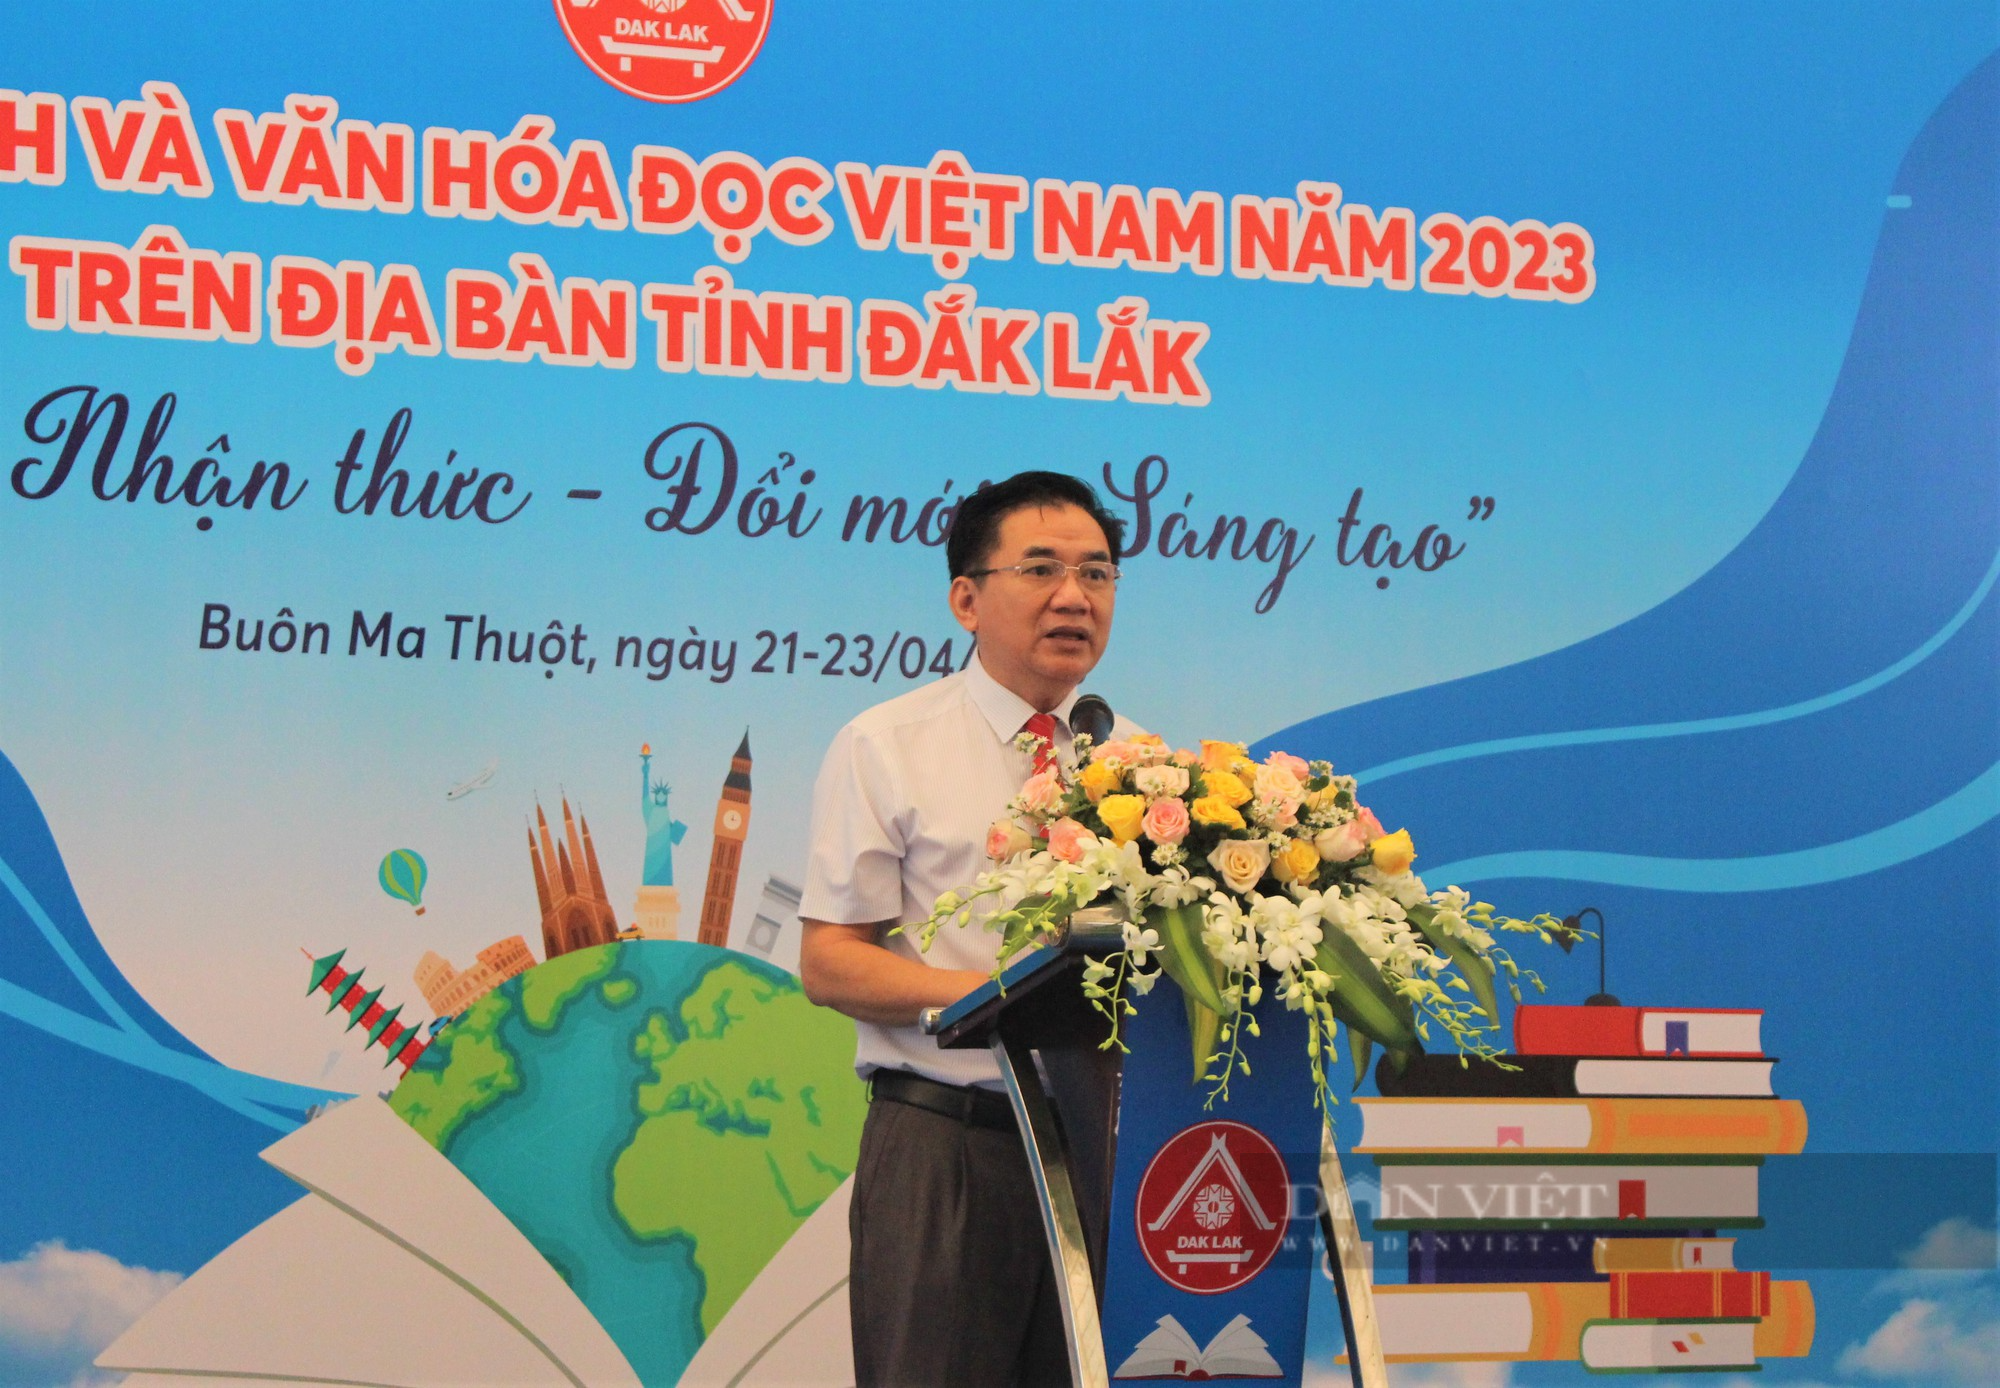 Đắk Lắk: Nhiều hoạt động hấp dẫn tại Ngày Sách và Văn hóa đọc Việt Nam 2023 - Ảnh 1.